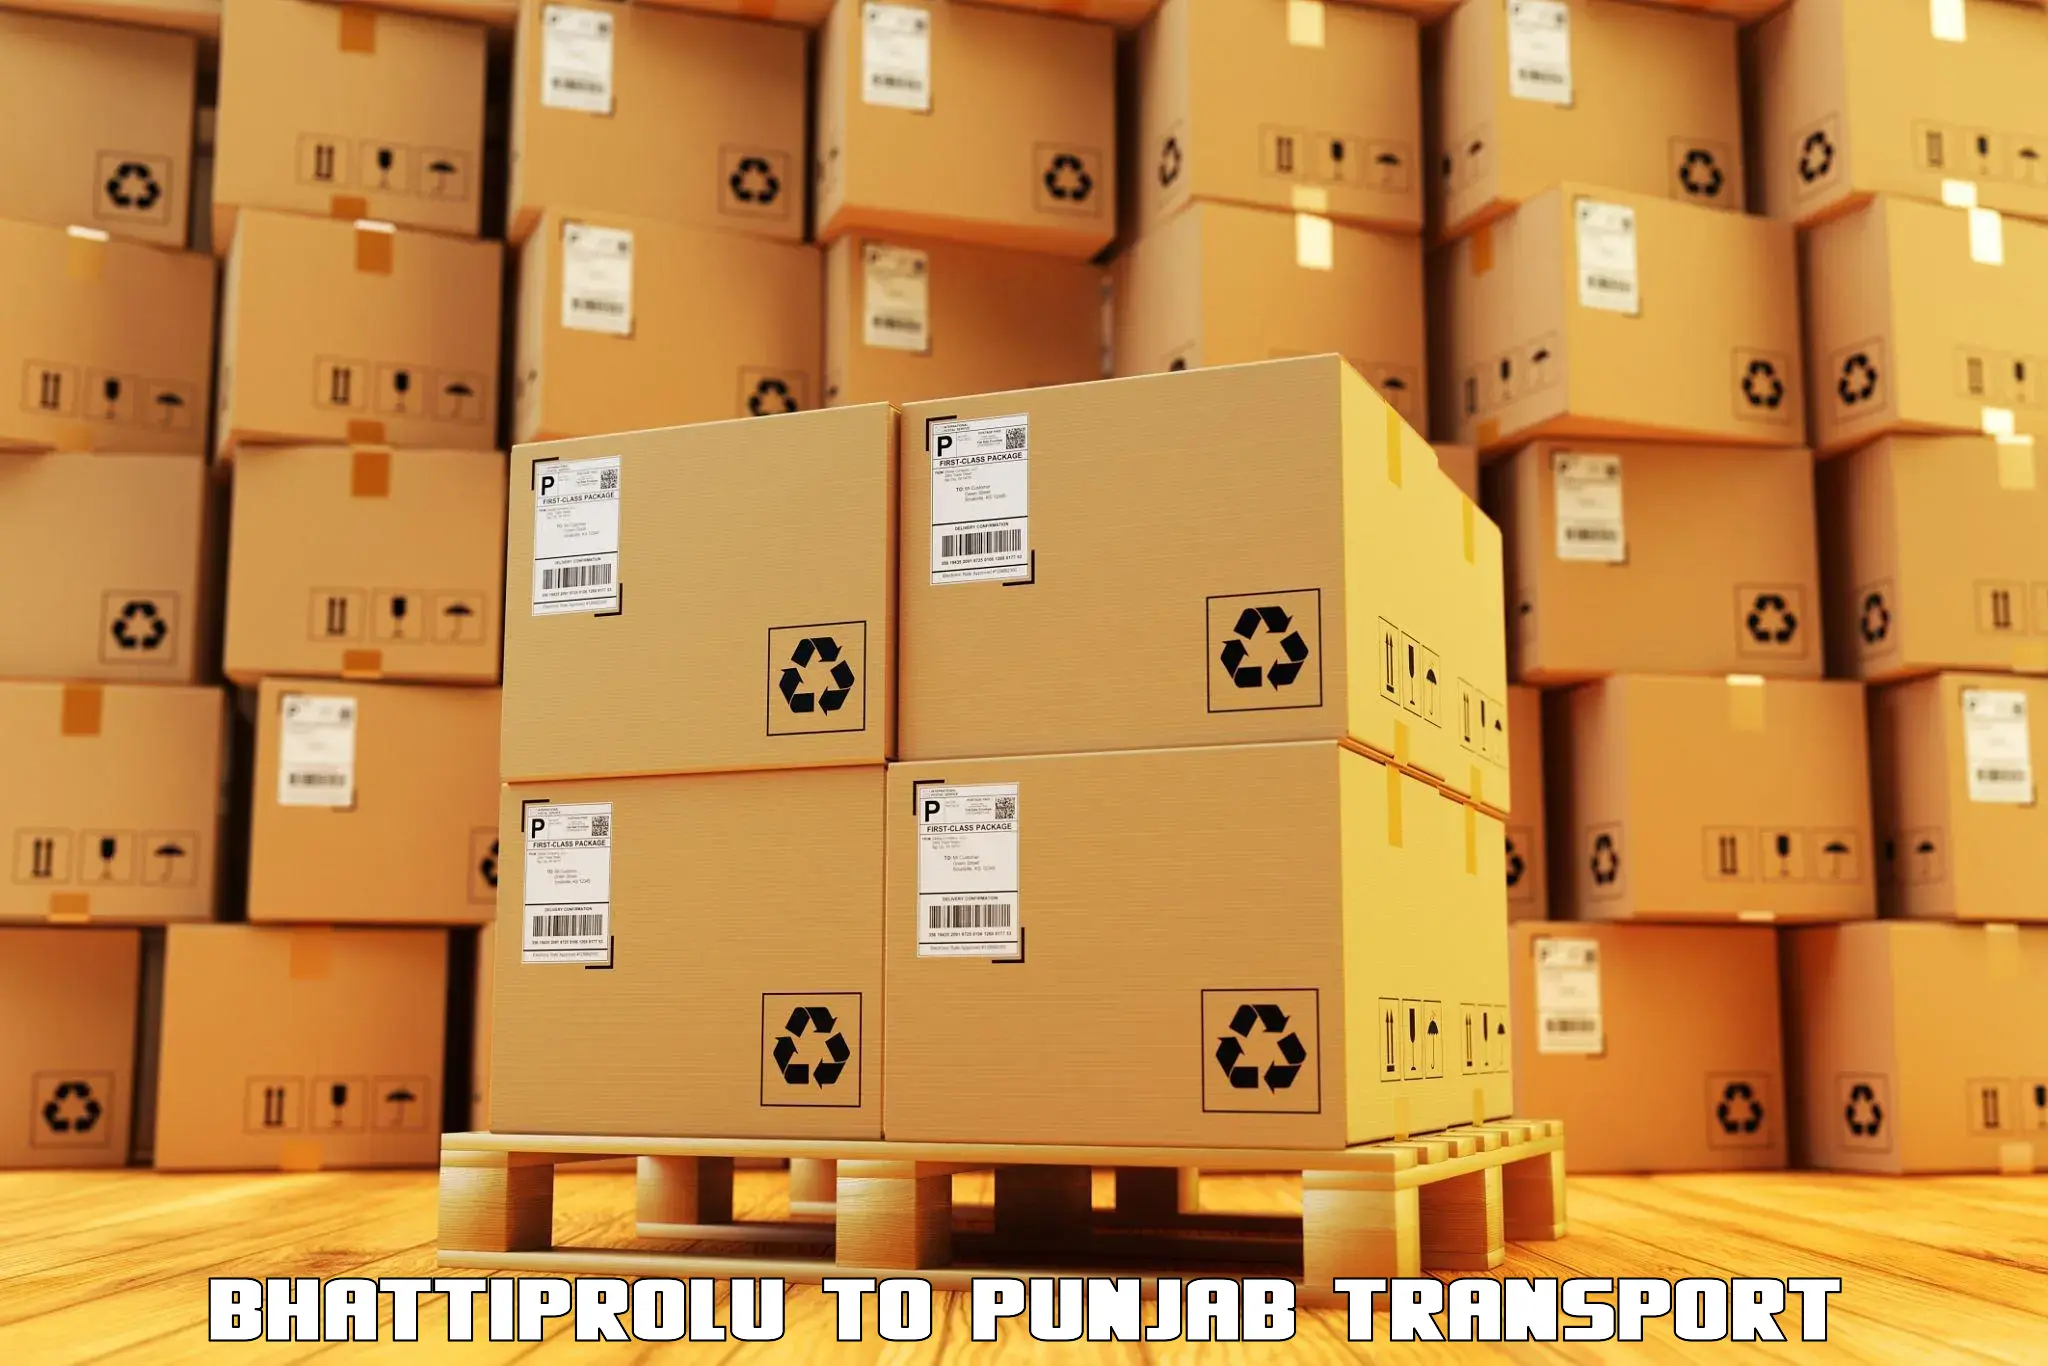 Online transport service Bhattiprolu to Jalandhar